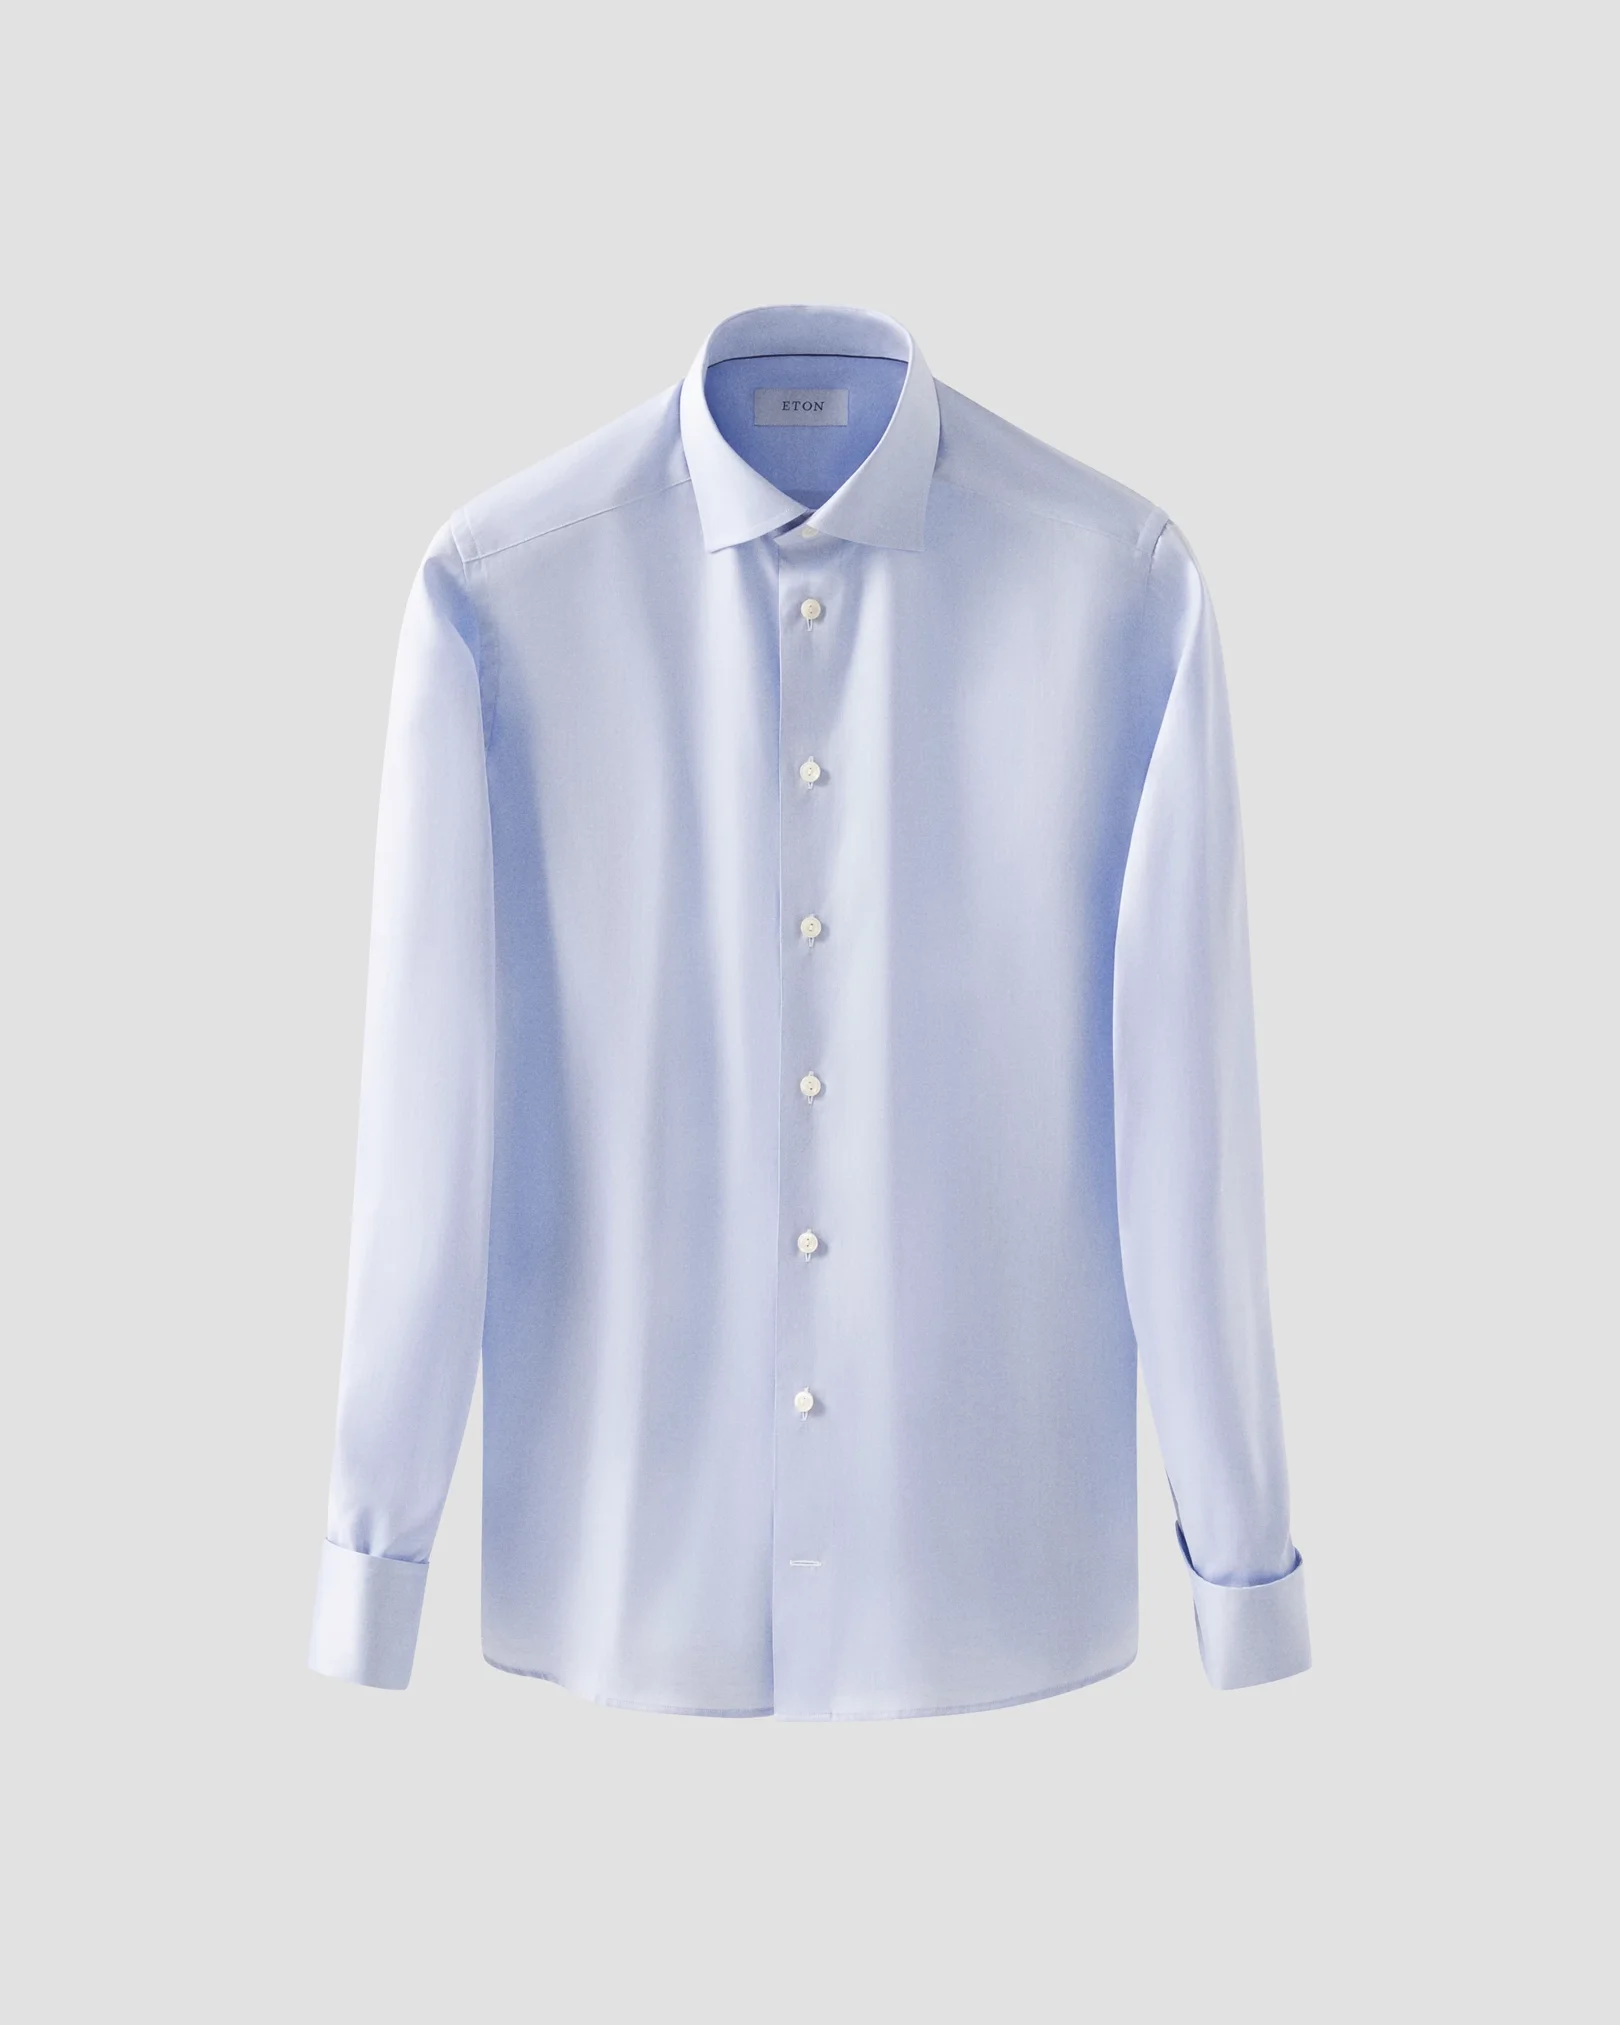 Eton - Light Blue Signature Twill Shirt – French Cuffs